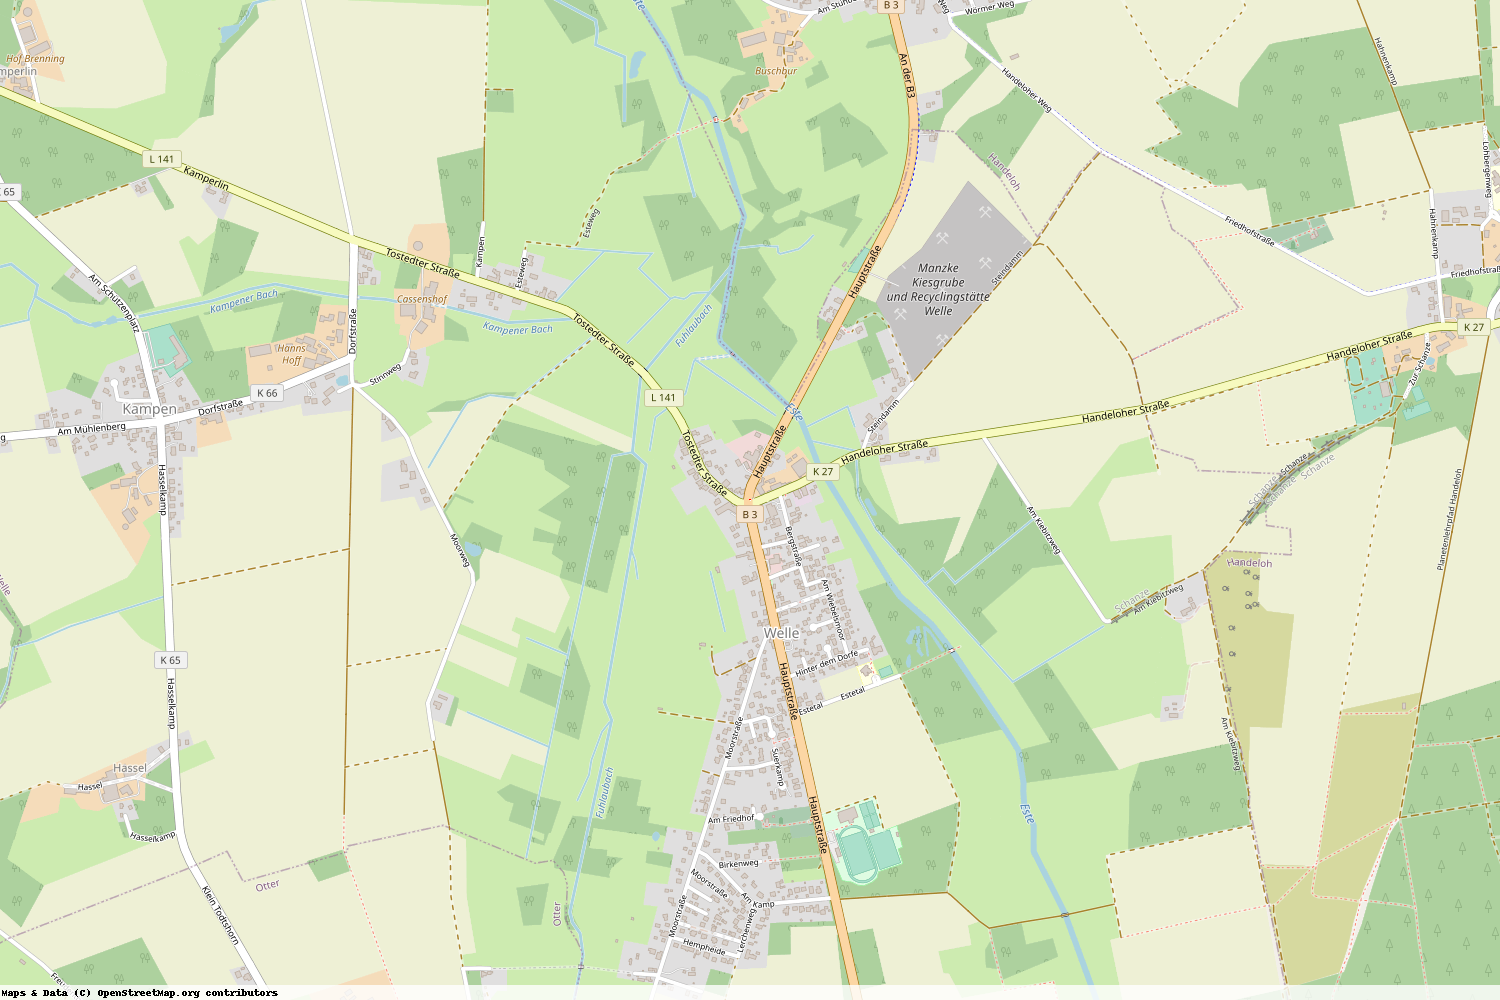 Ist gerade Stromausfall in Niedersachsen - Harburg - Welle?